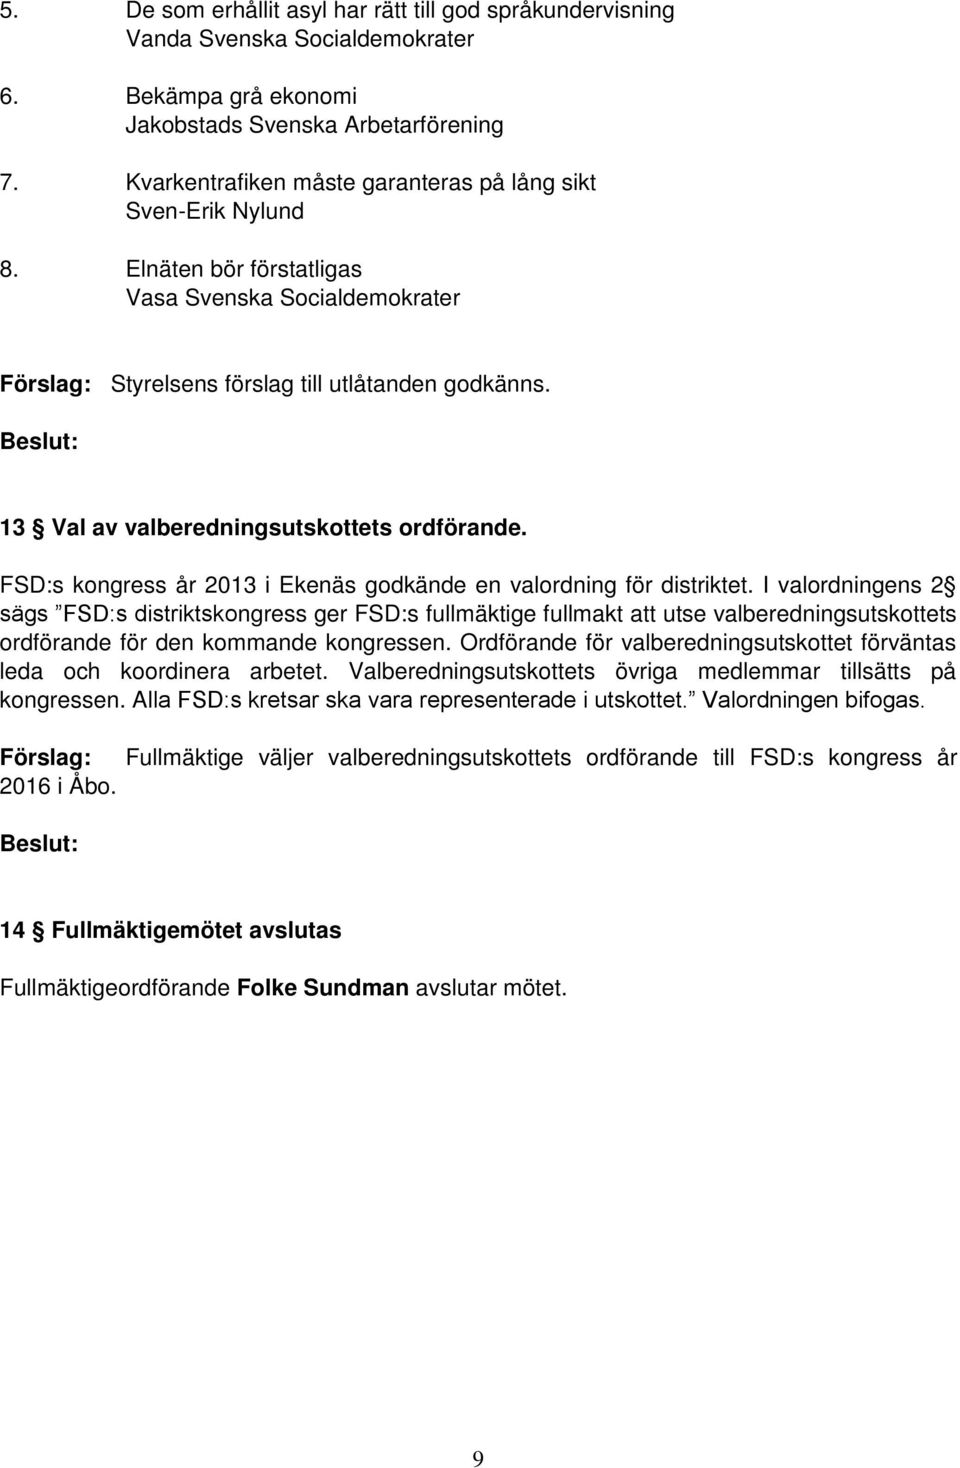 Beslut: 13 Val av valberedningsutskottets ordförande. FSD:s kongress år 2013 i Ekenäs godkände en valordning för distriktet.